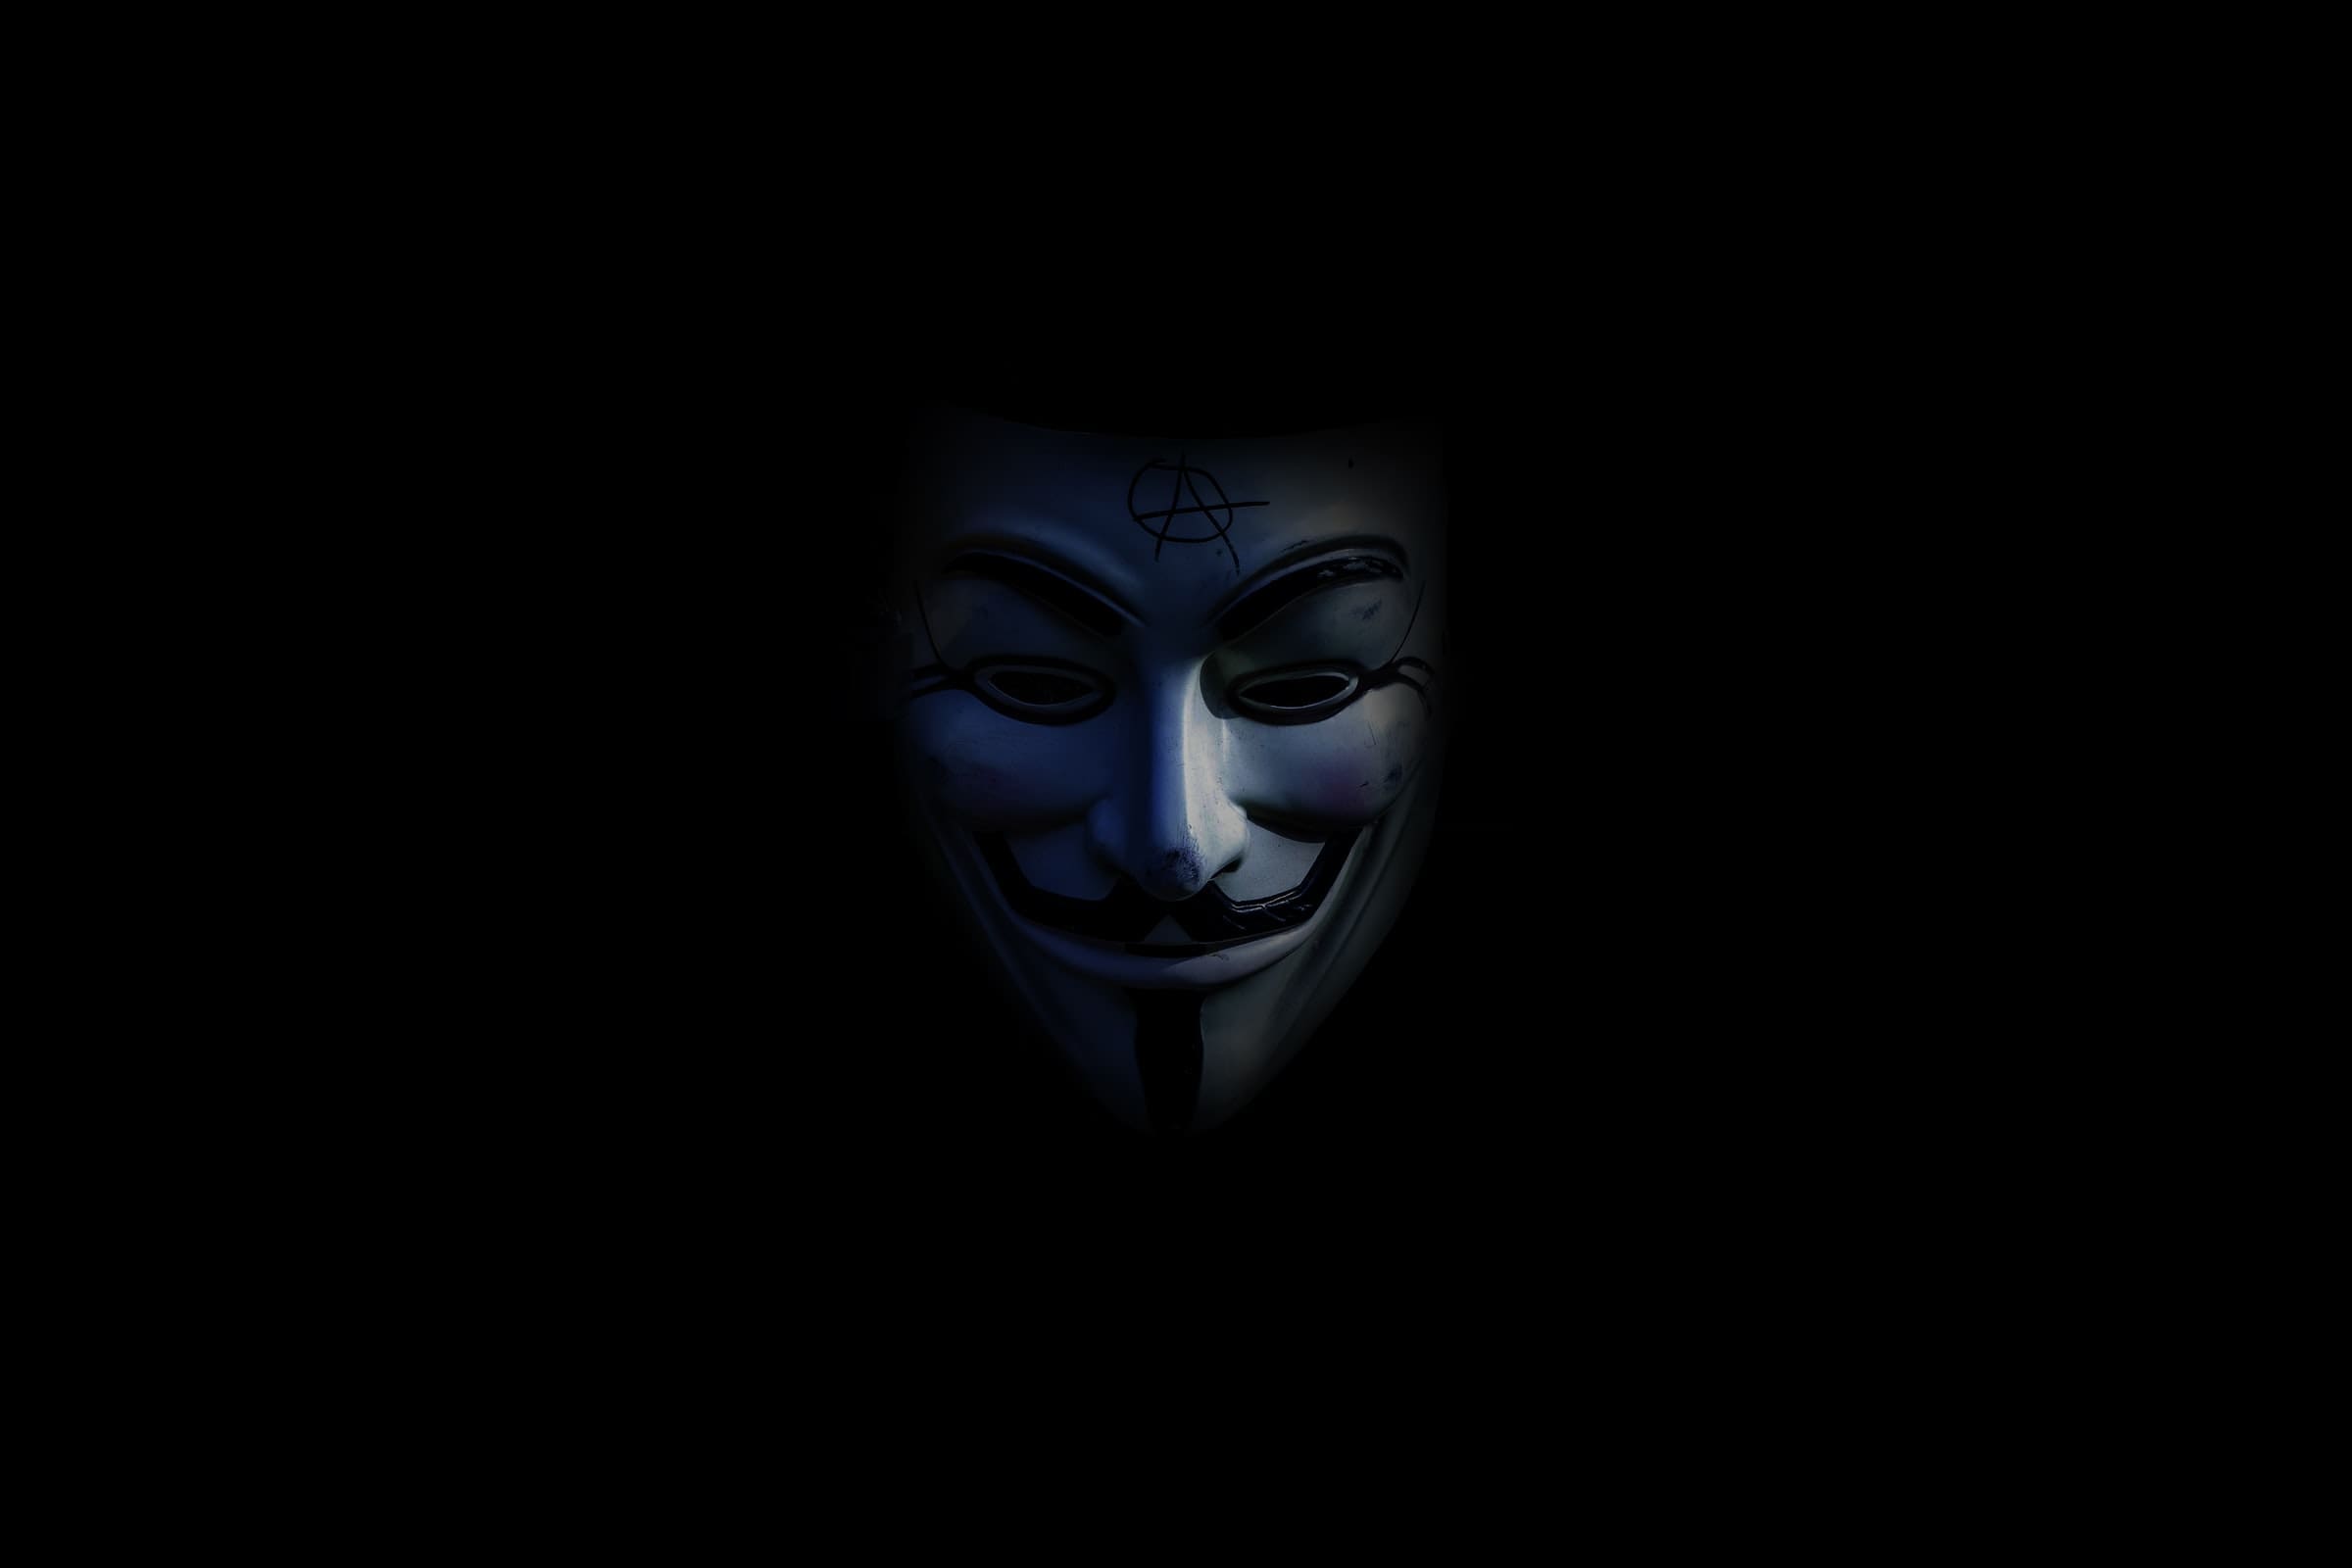 tarik-haiga-anonymer-hacker-kollektiv-unsplash (1)